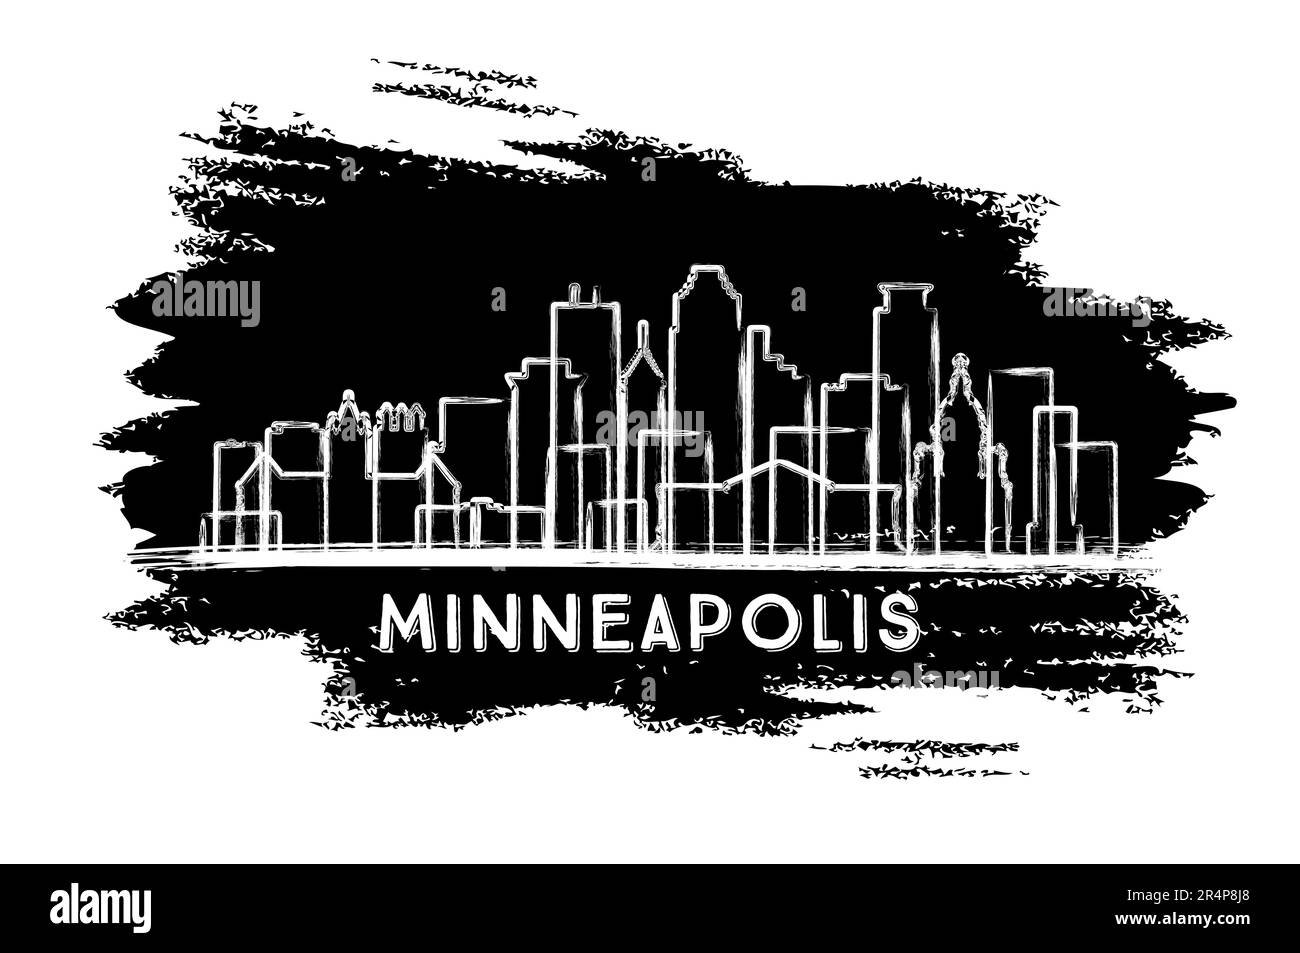 Minneapolis, Minnesota City Skyline Silhouette. Schizzo disegnato a mano. Concetto di viaggio d'affari e turismo con architettura moderna. Illustrazione vettoriale. Illustrazione Vettoriale